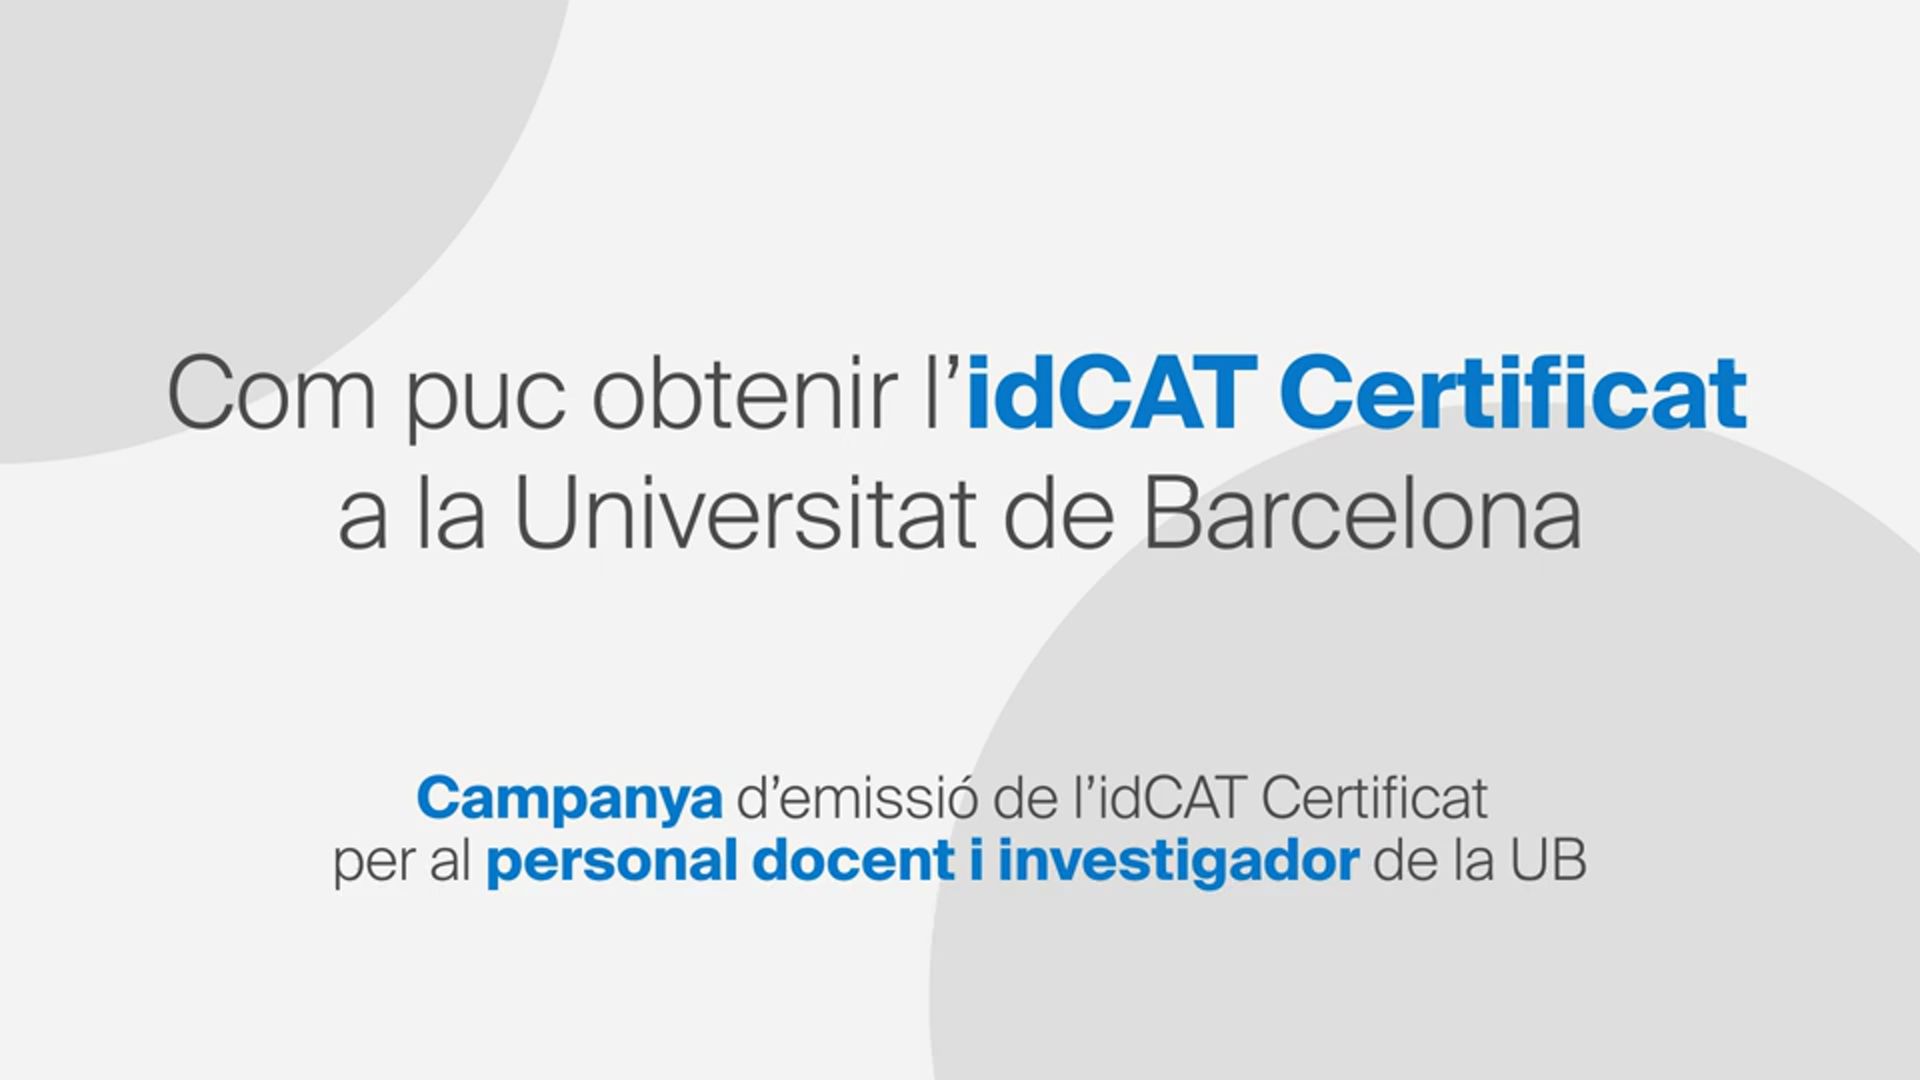 Com puc obtenir l’idCAT Certificat a la Universitat de Barcelona? Campanya d’emissió de l’idCAT ...<br/>Certificat per al personal docent i investigador de la UB